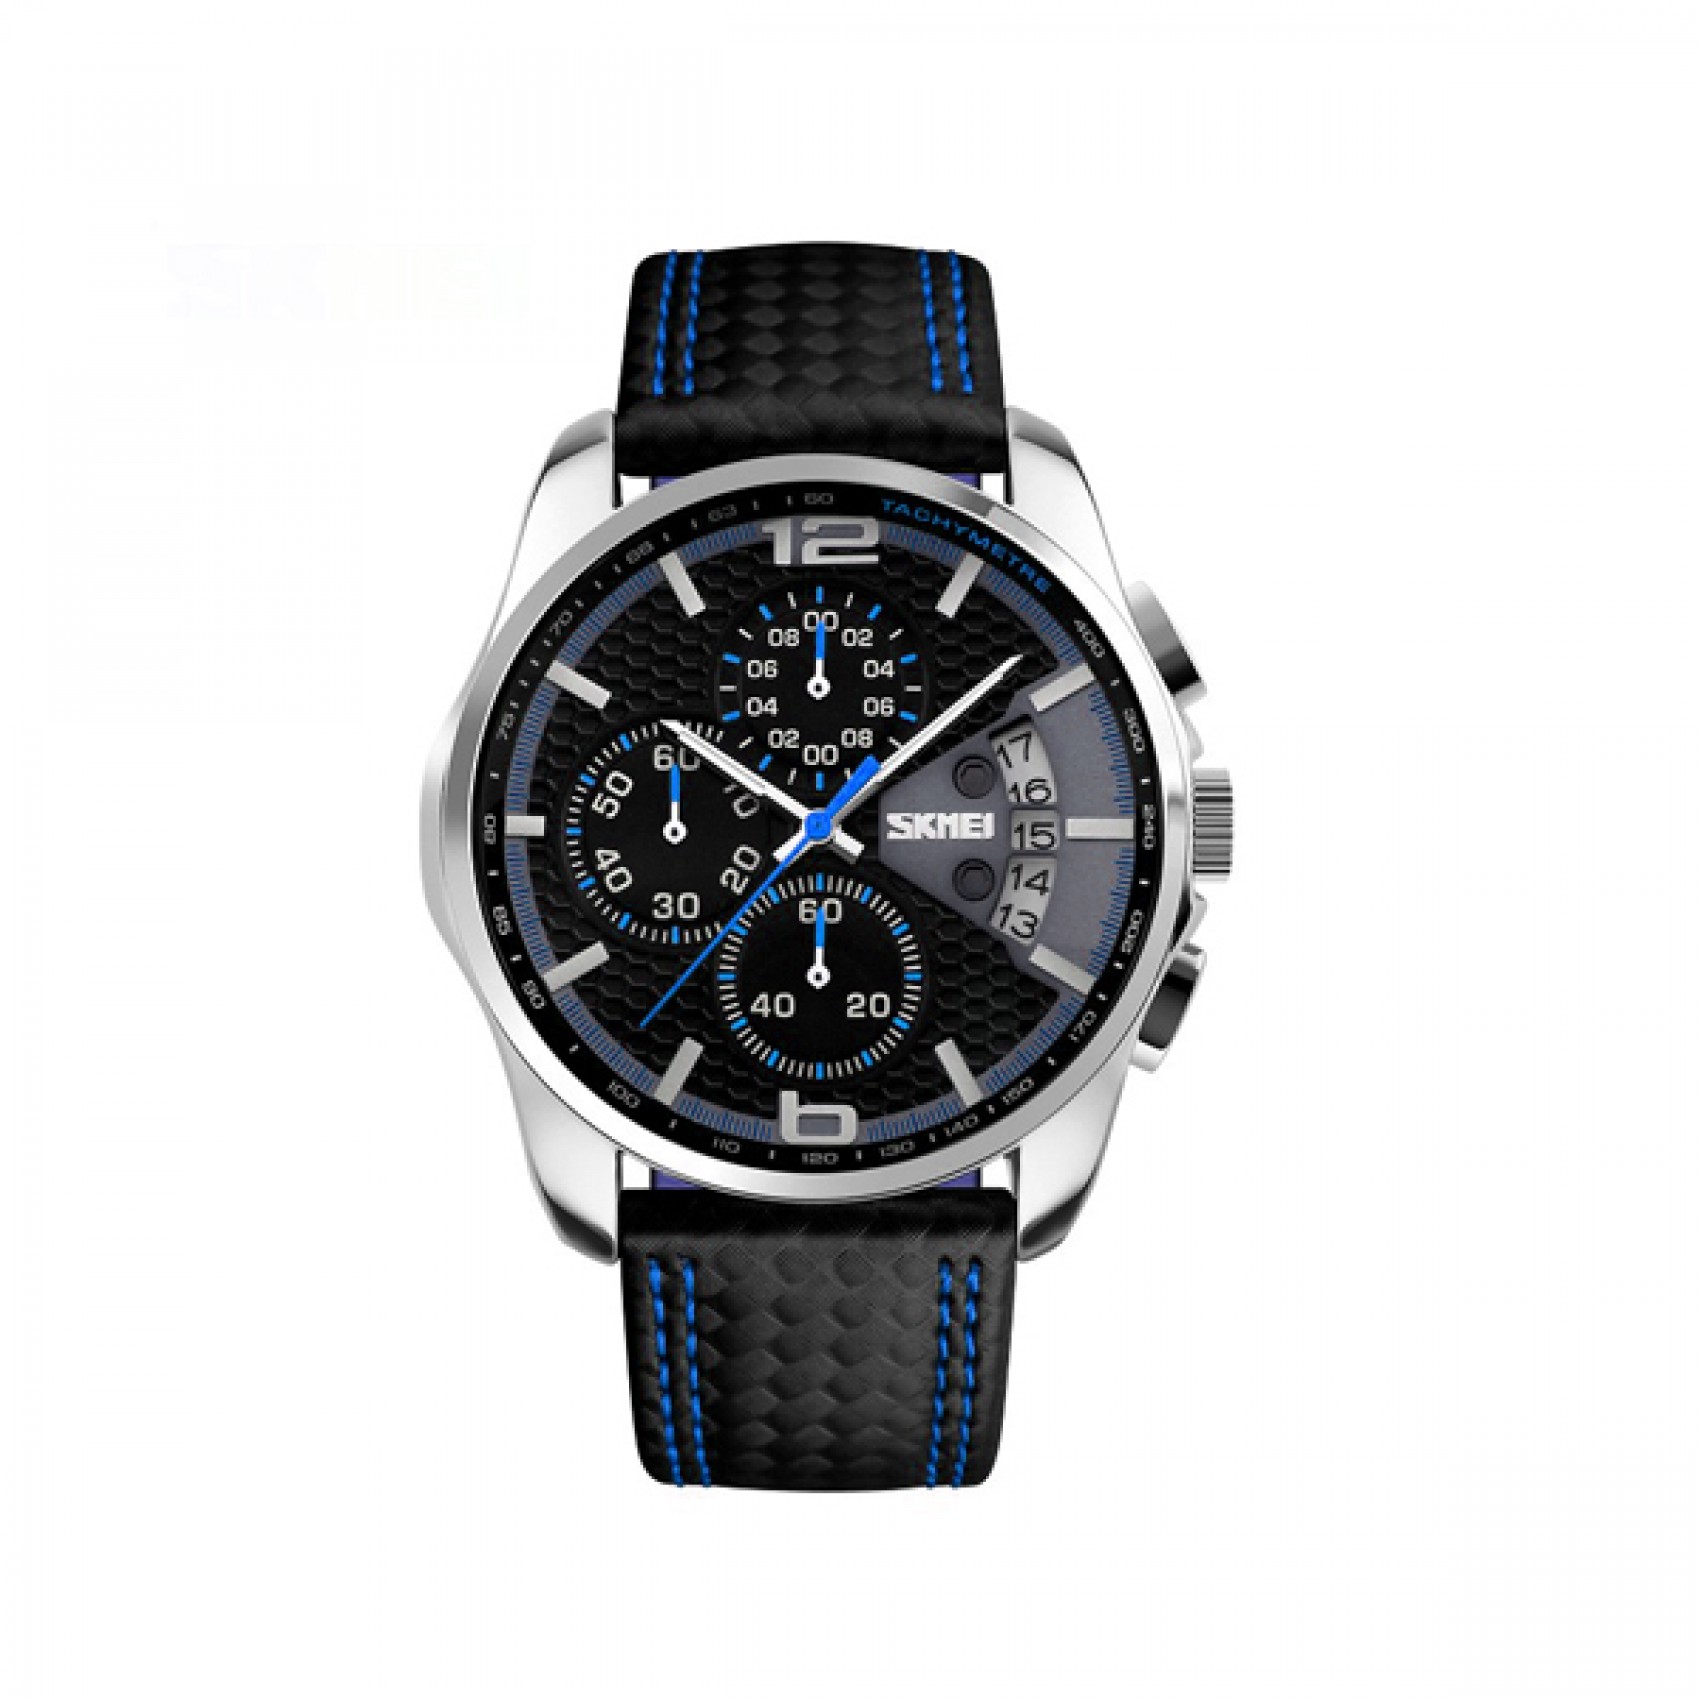 Waterproof Fashion PU Leather Band Wrist Watch 9106 - Blue